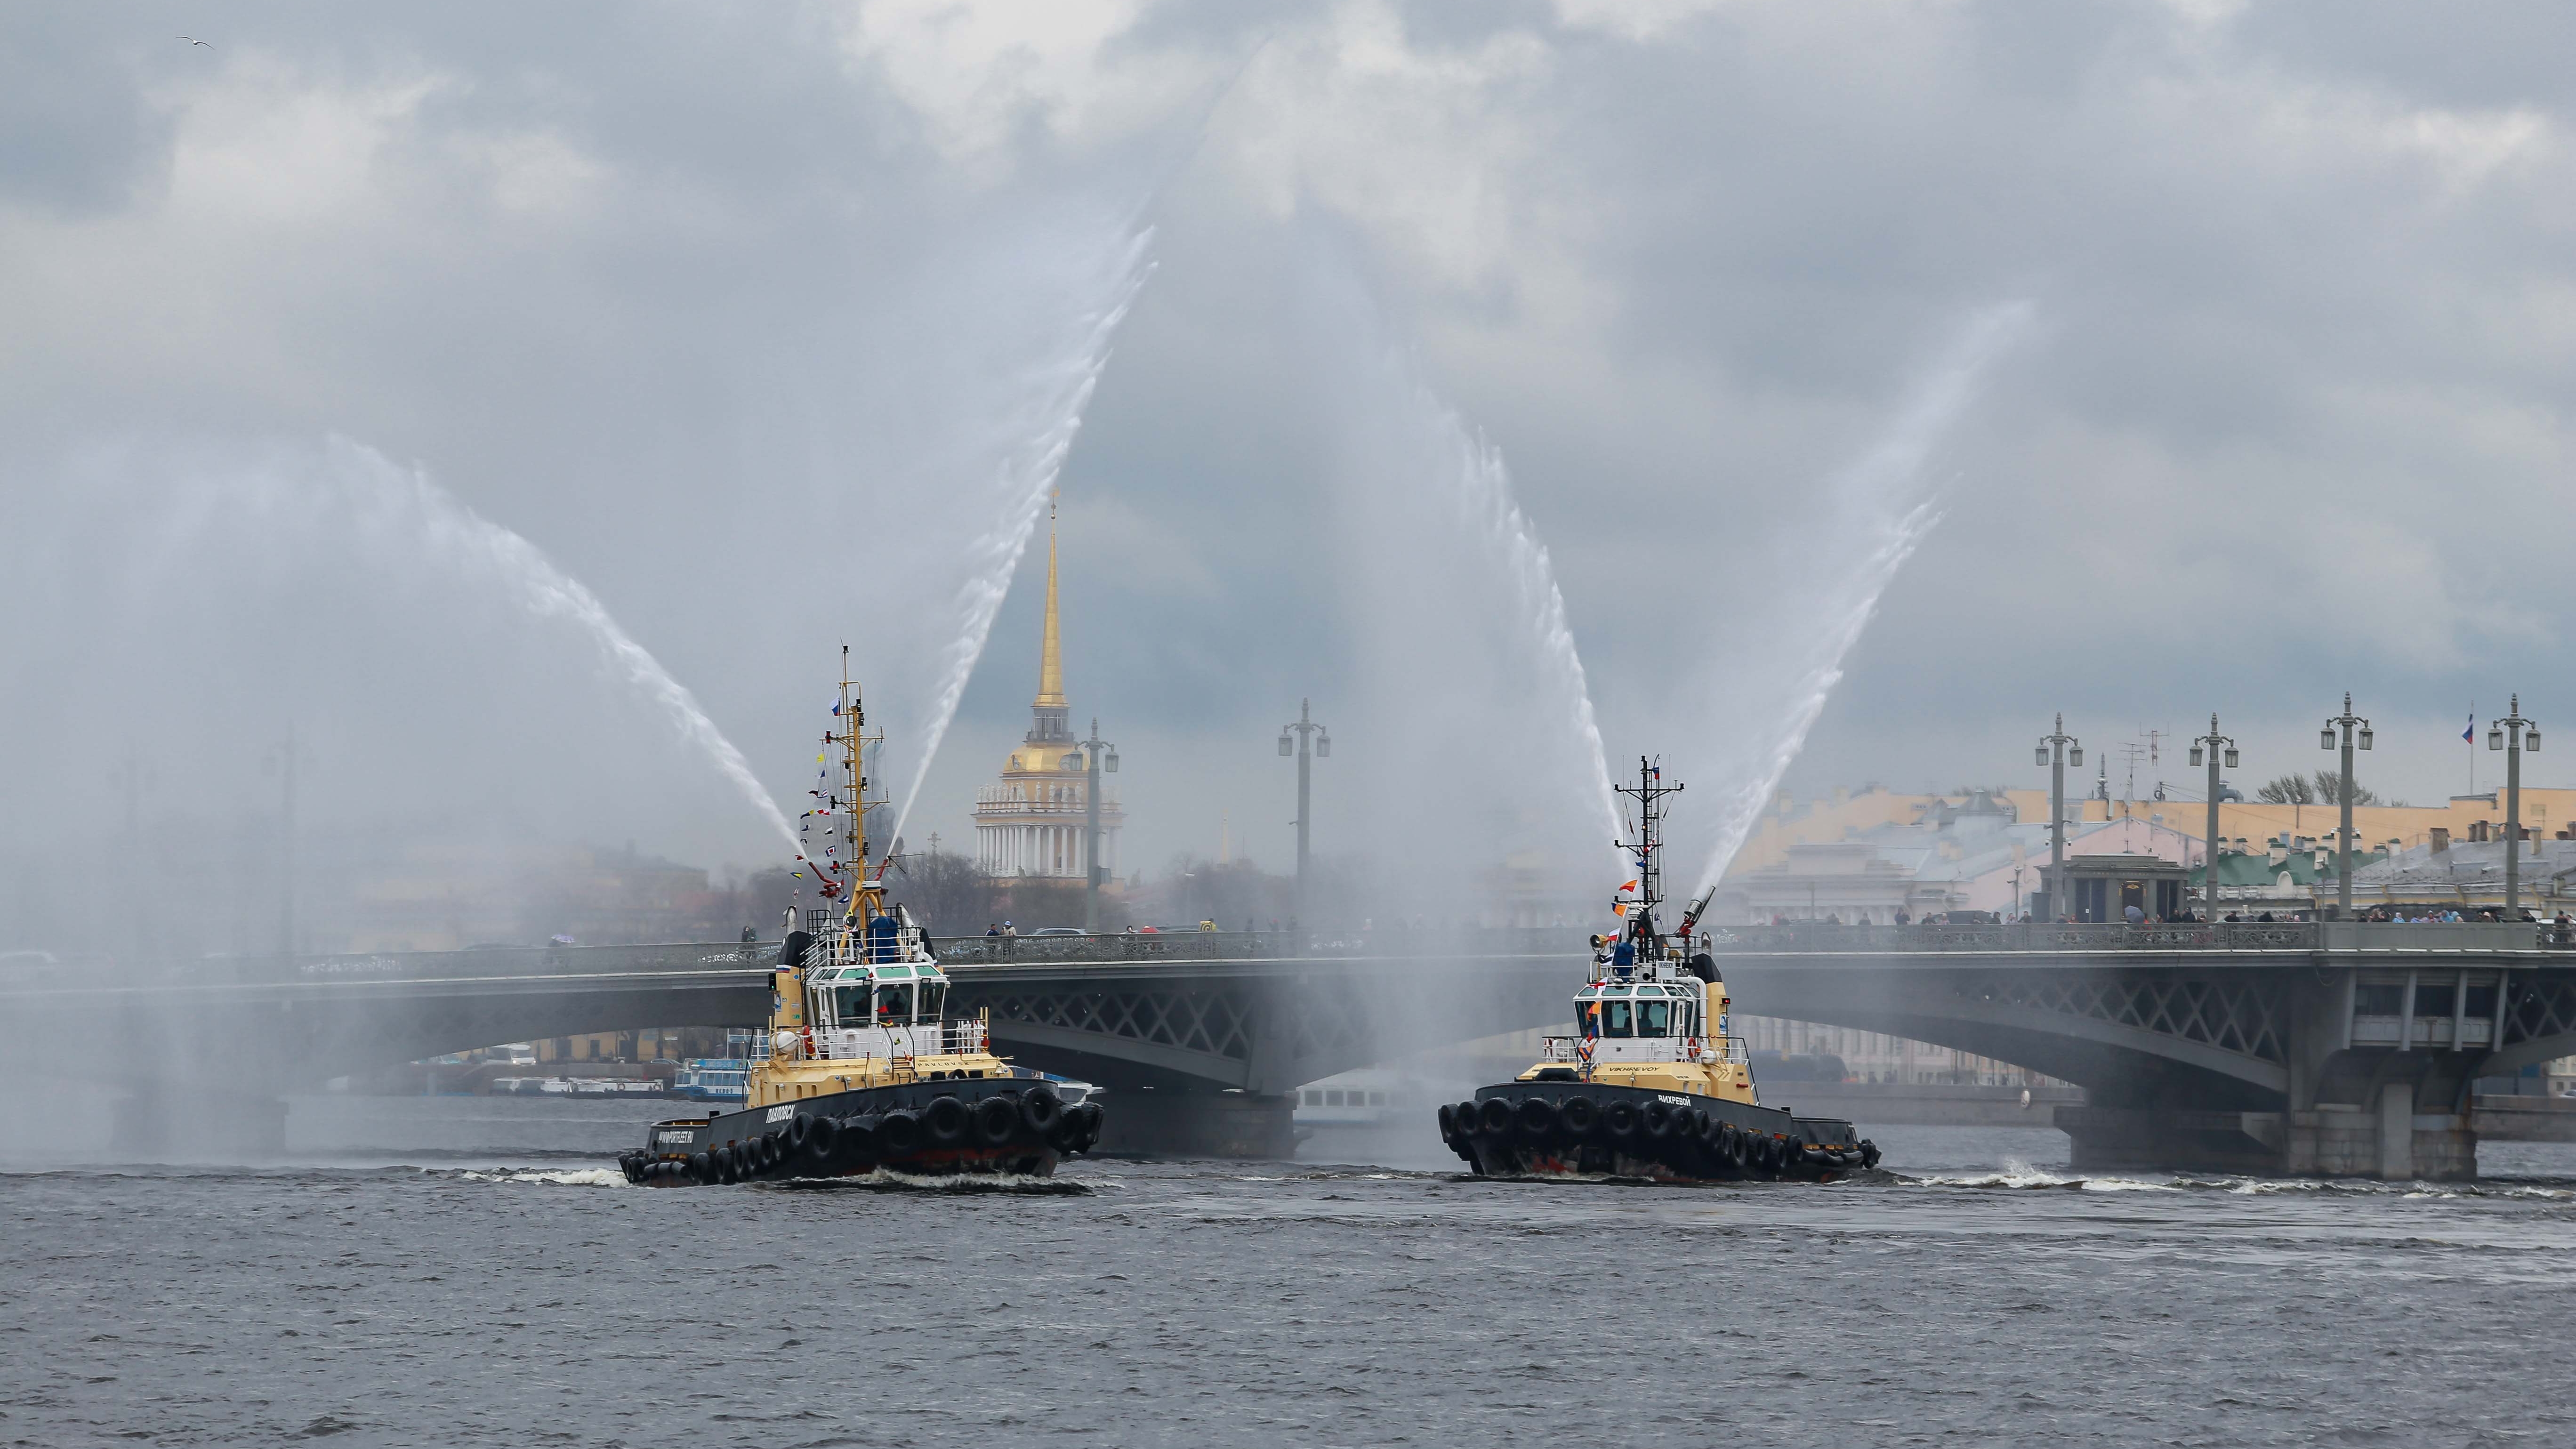 В Петербурге завершился Фестиваль ледоколов, который по традиции дал старт летнему туристскому сезону